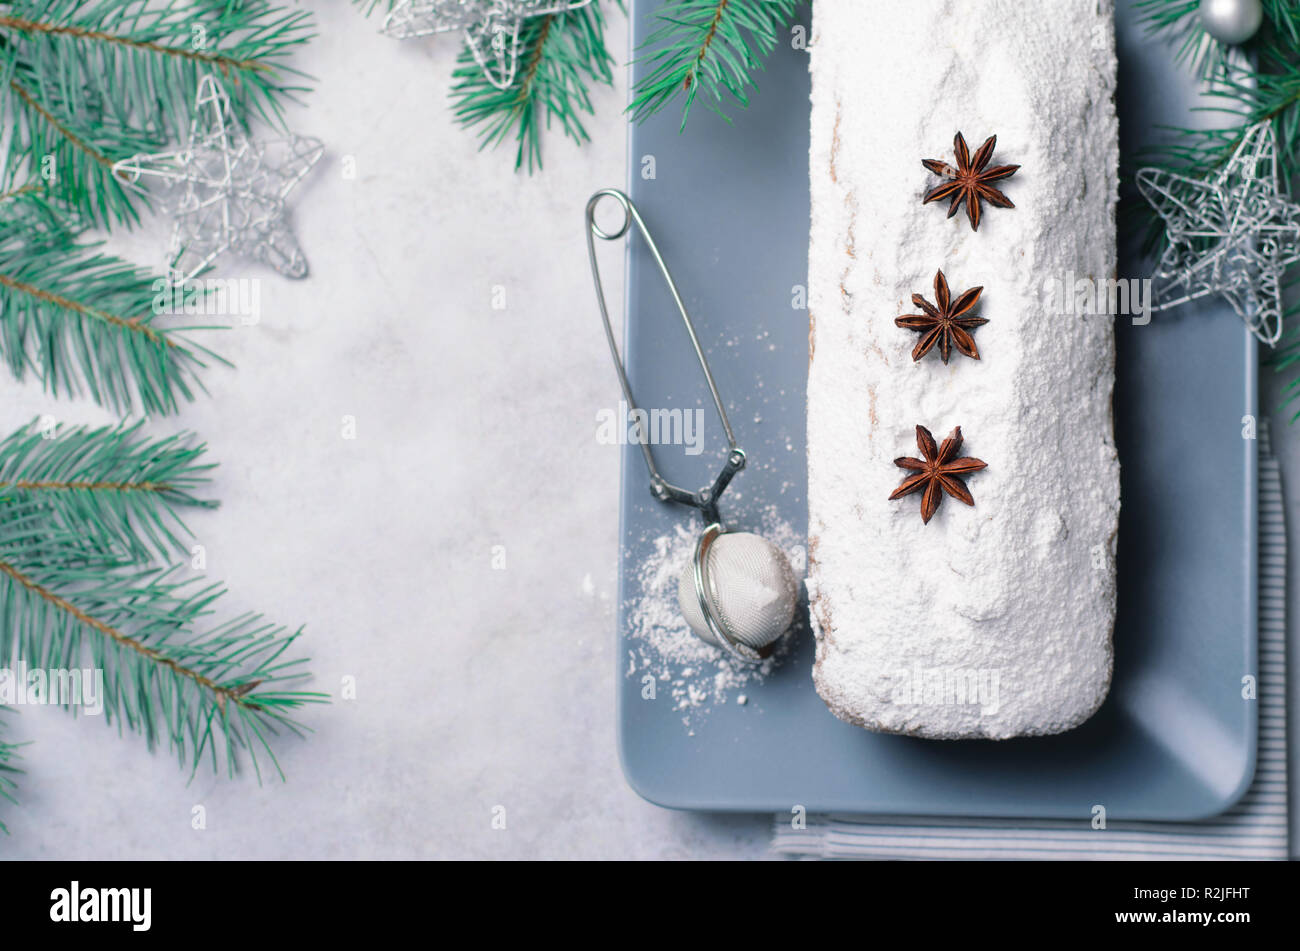 Brot Kuchen mit Puderzucker bestäubt, Weihnachten und Winter Urlaub gönnen, hausgemachte Pound Cake auf grauem Hintergrund Stockfoto